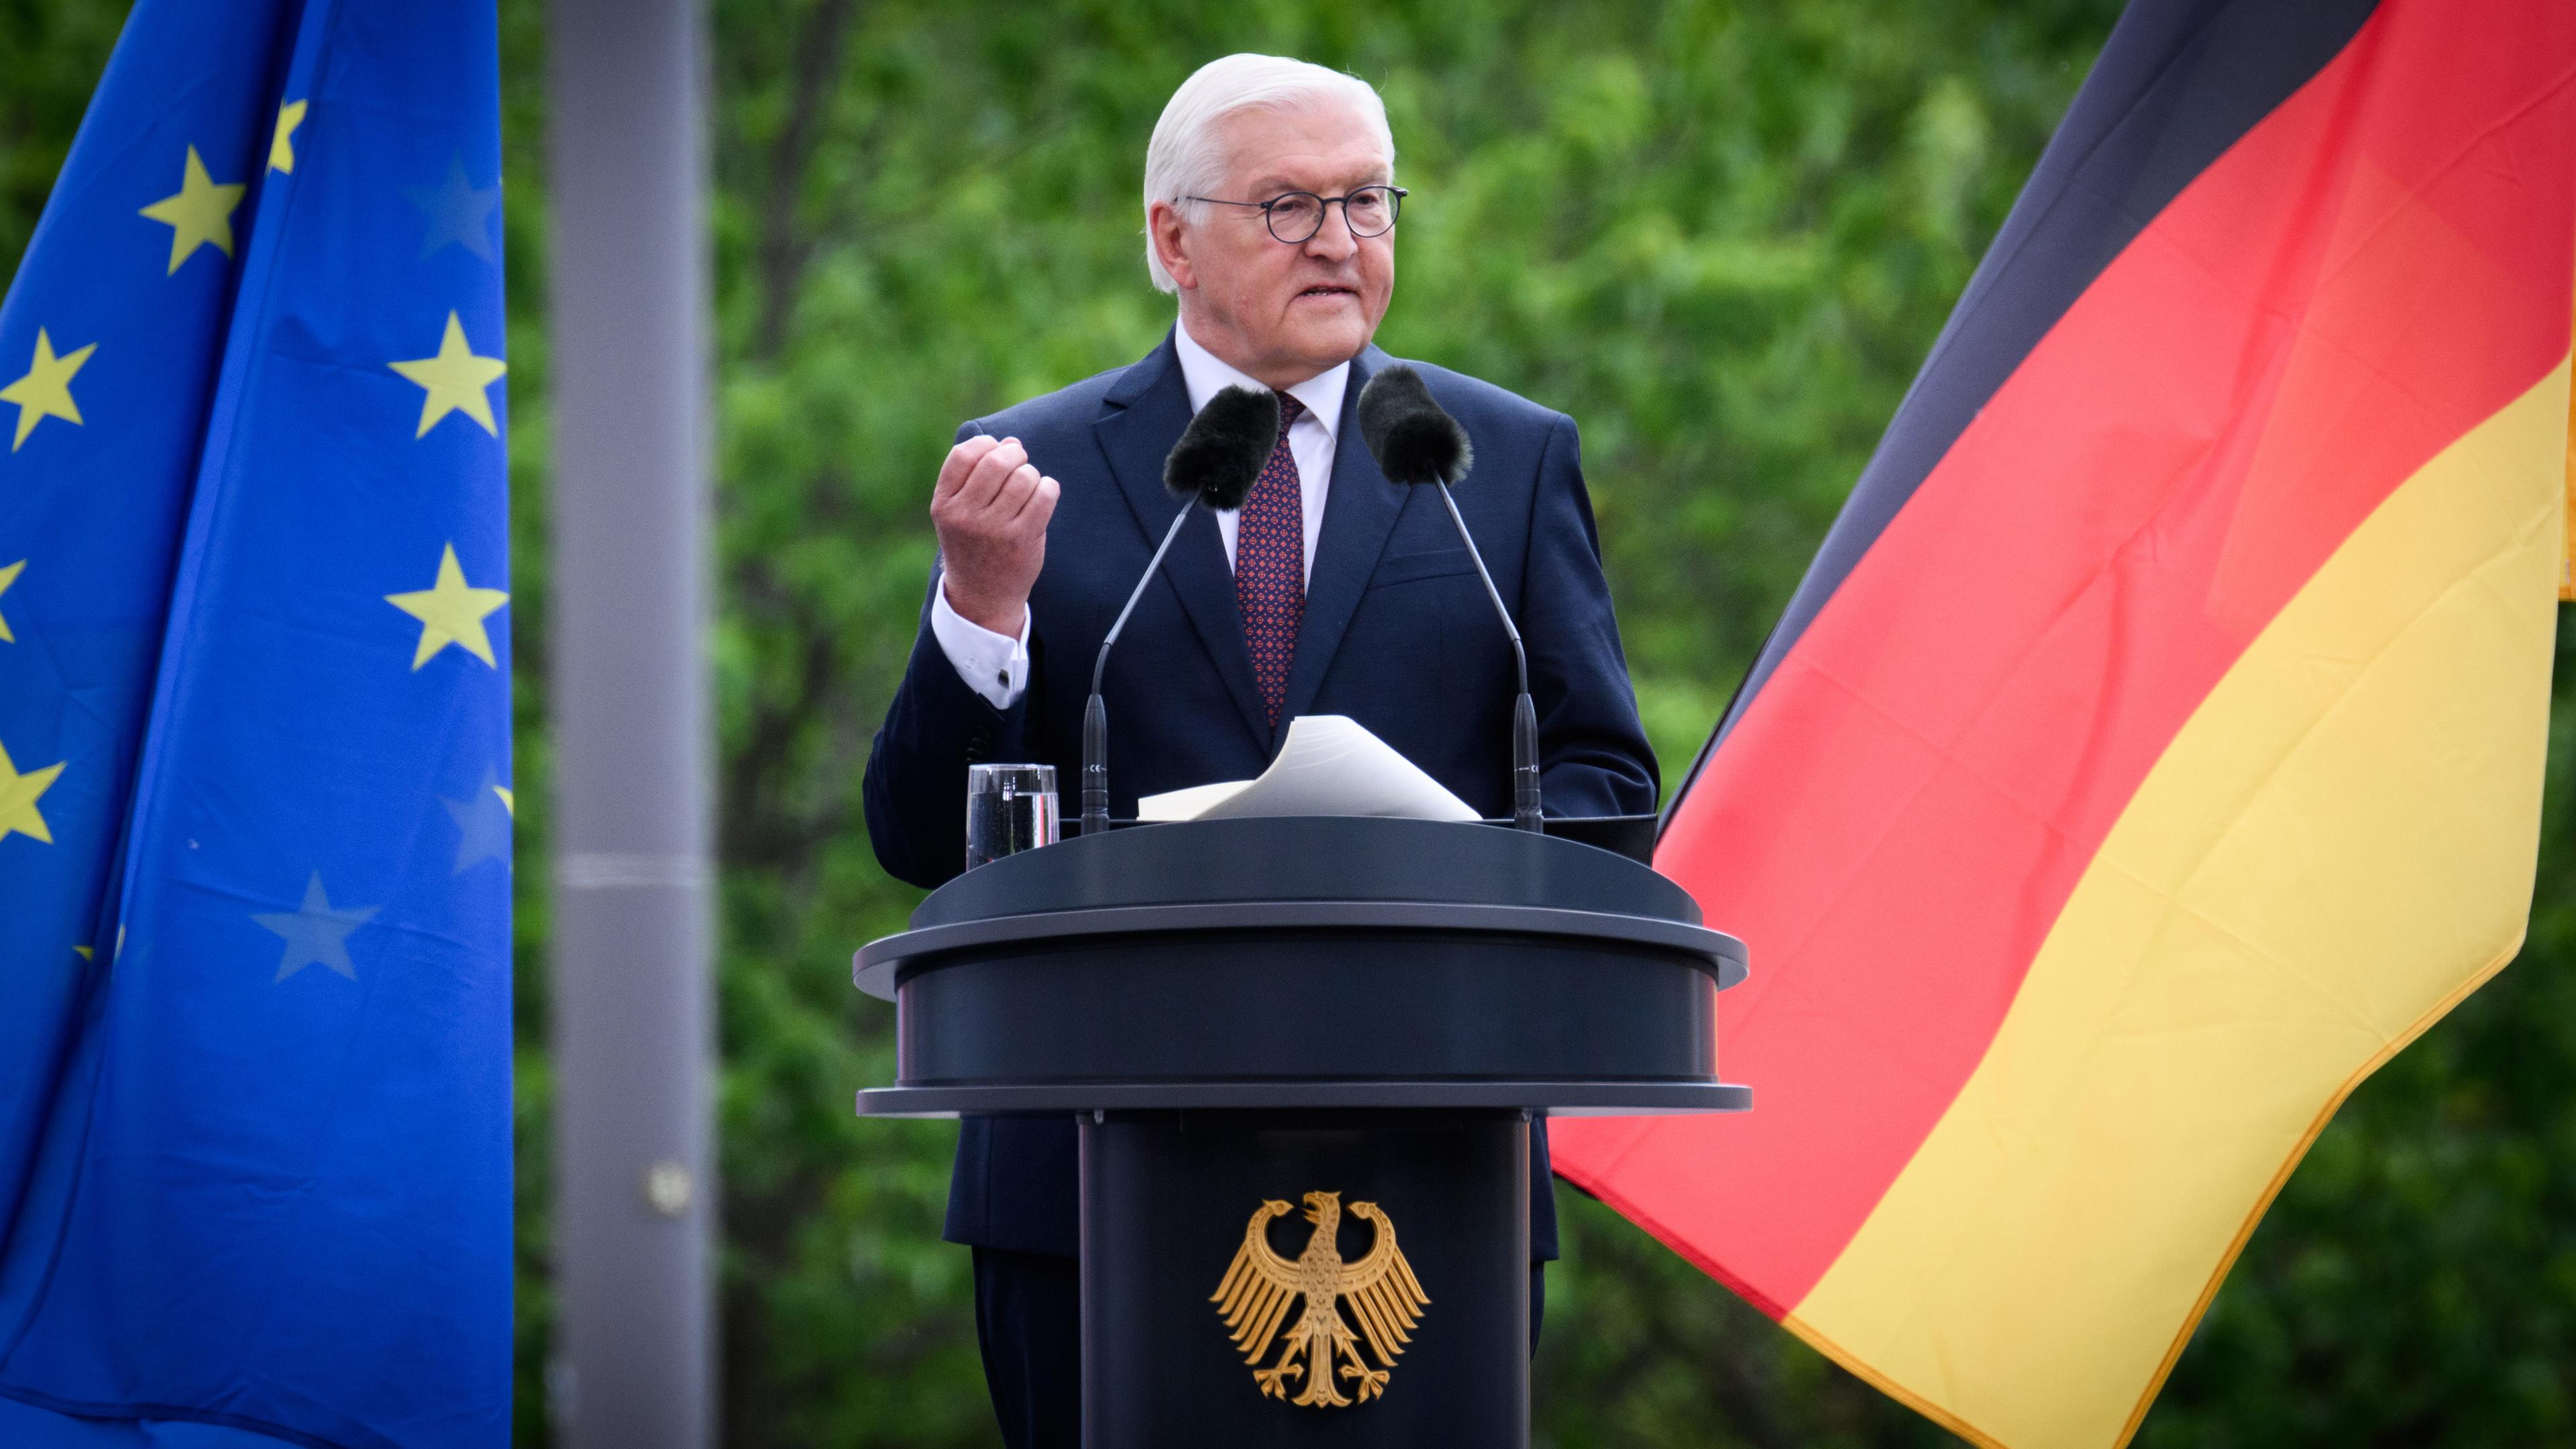 Bundespräsident Frank-Walter Steinmeier spricht beim Staatsakt zu "75 Jahre Grundgesetz" auf dem Forum zwischen Bundestag und Bundeskanzleramt. 